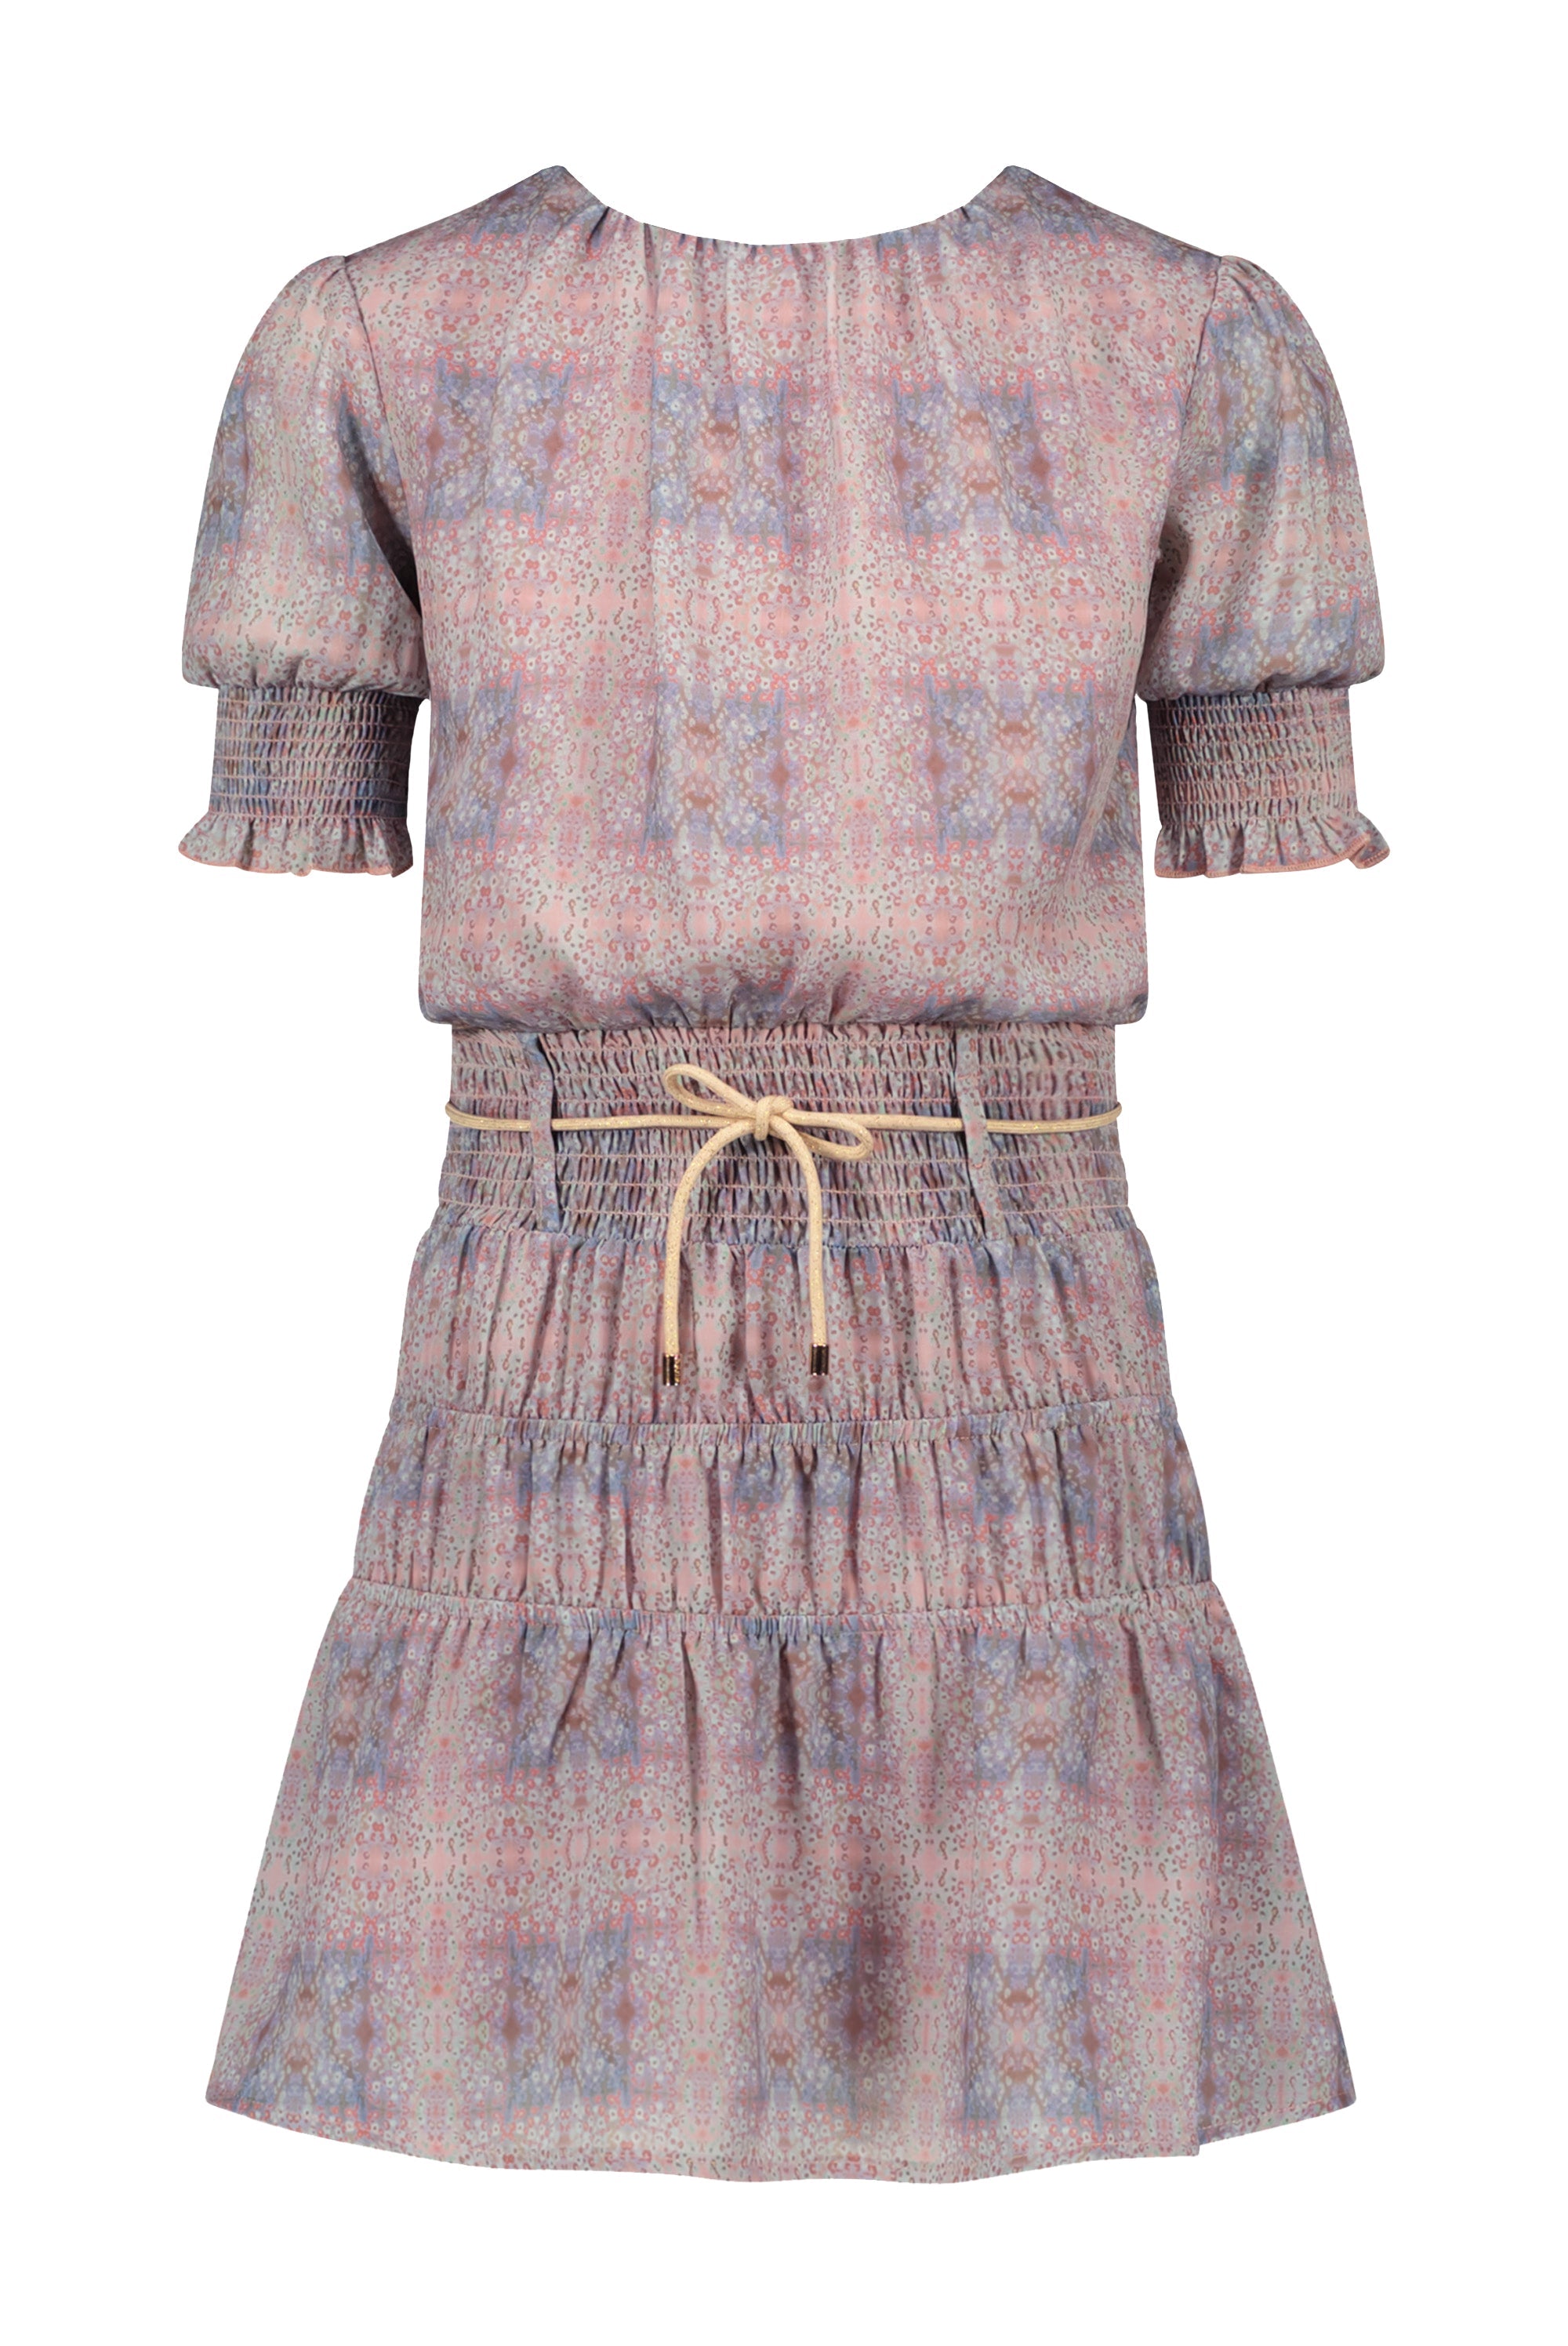 Meisjes Manyu s/sl dress with elasticated details at skirt van NoNo in de kleur Rosy Ginger in maat 134-140.